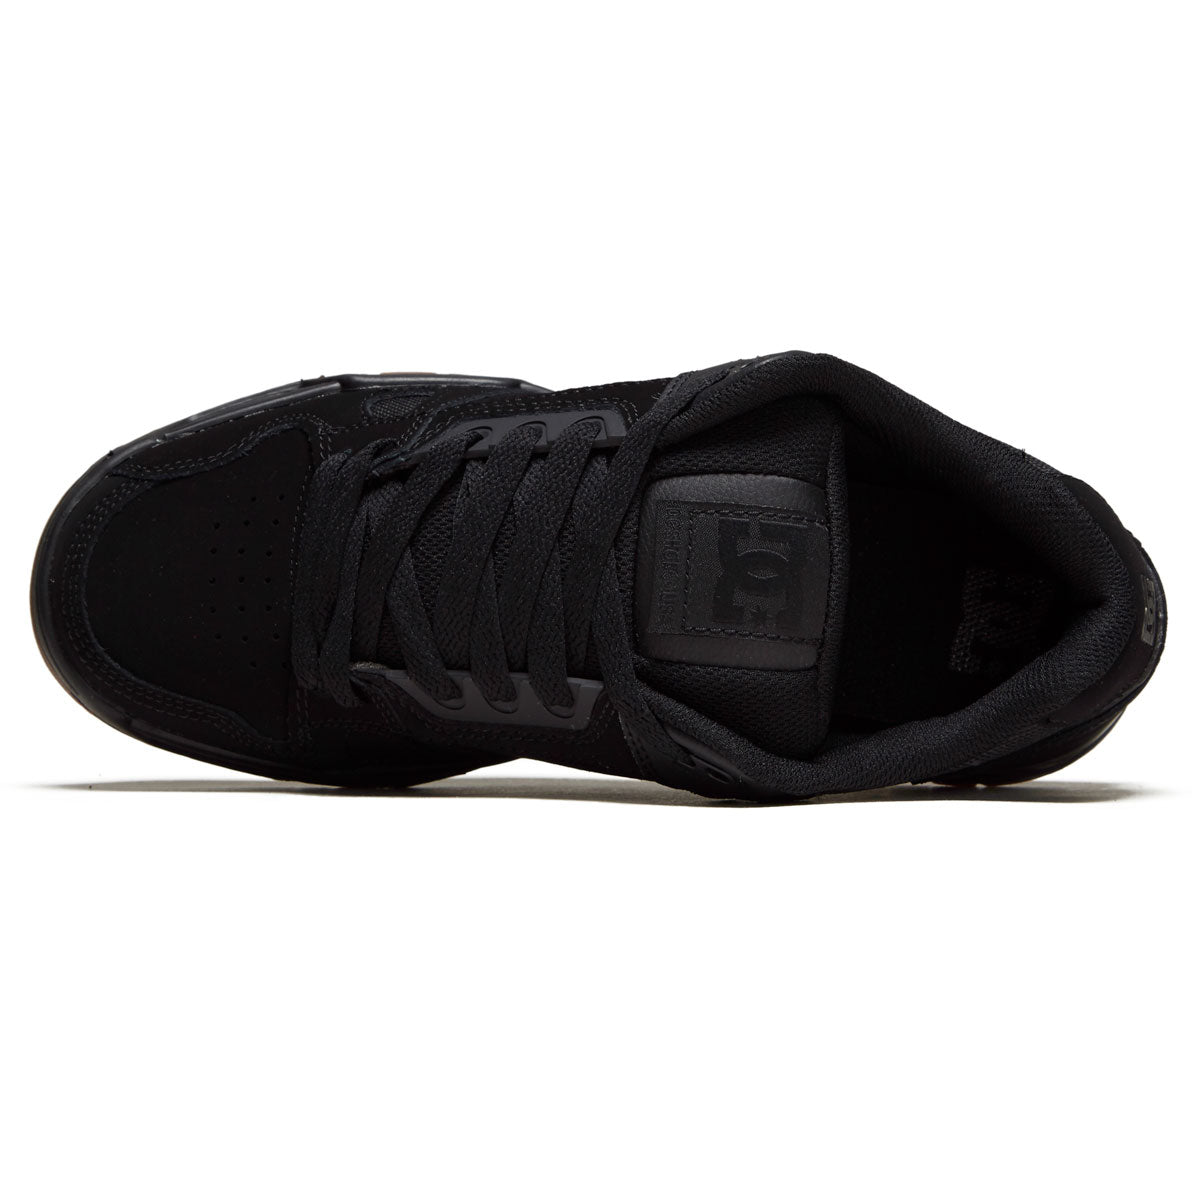 DC Stag Shoes - Black/Gum image 3